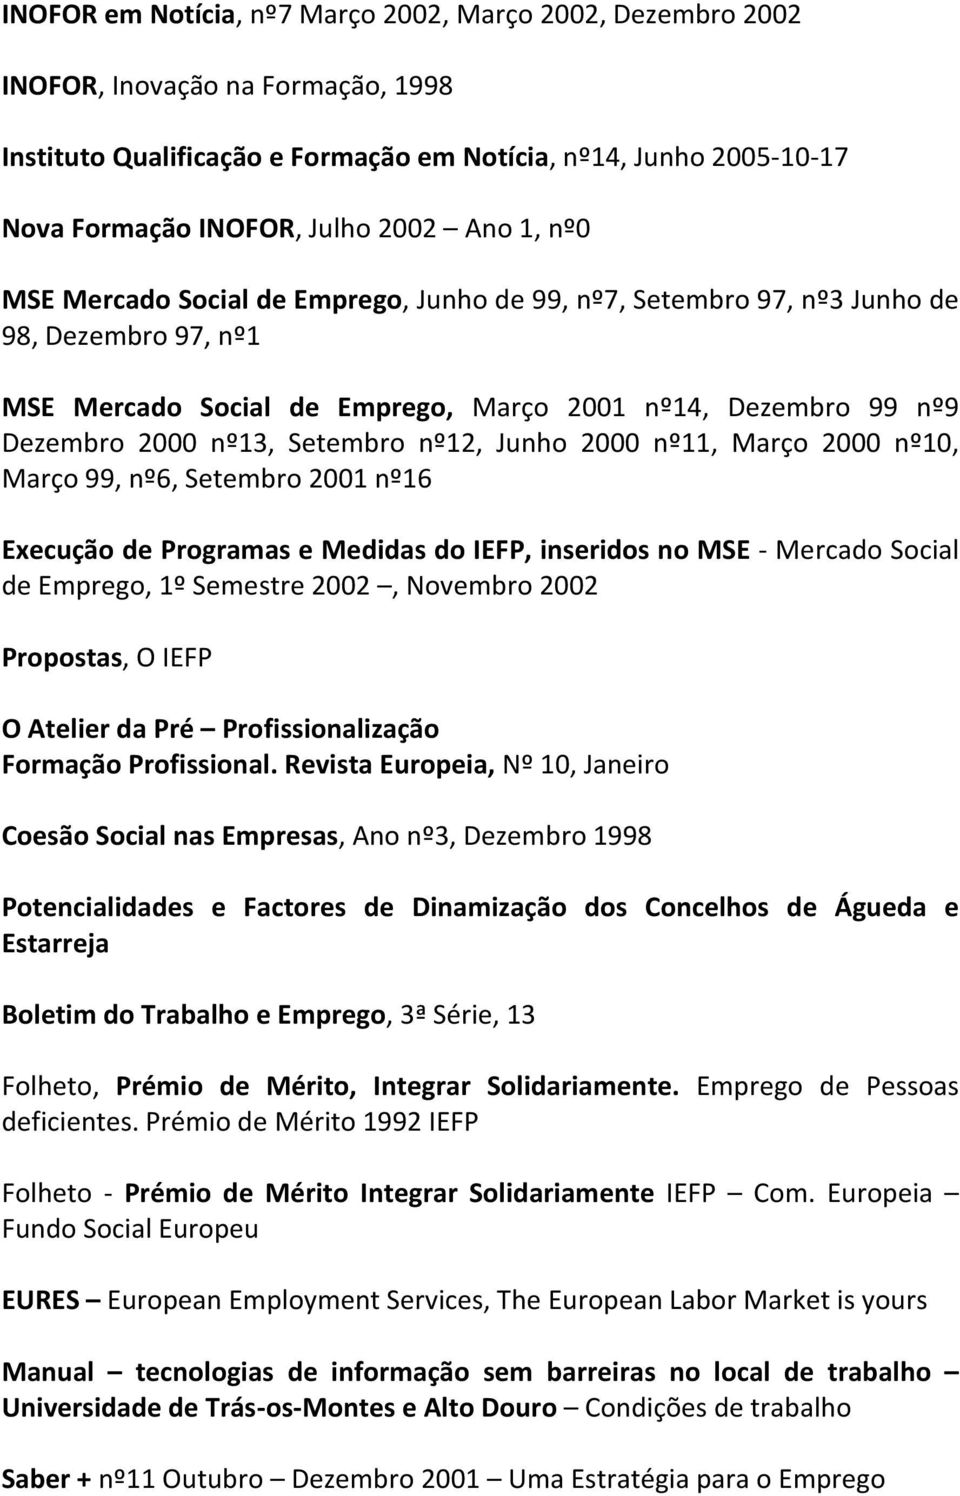 nº12, Junho 2000 nº11, Março 2000 nº10, Março 99, nº6, Setembro 2001 nº16 Execução de Programas e Medidas do IEFP, inseridos no MSE - Mercado Social de Emprego, 1º Semestre 2002, Novembro 2002